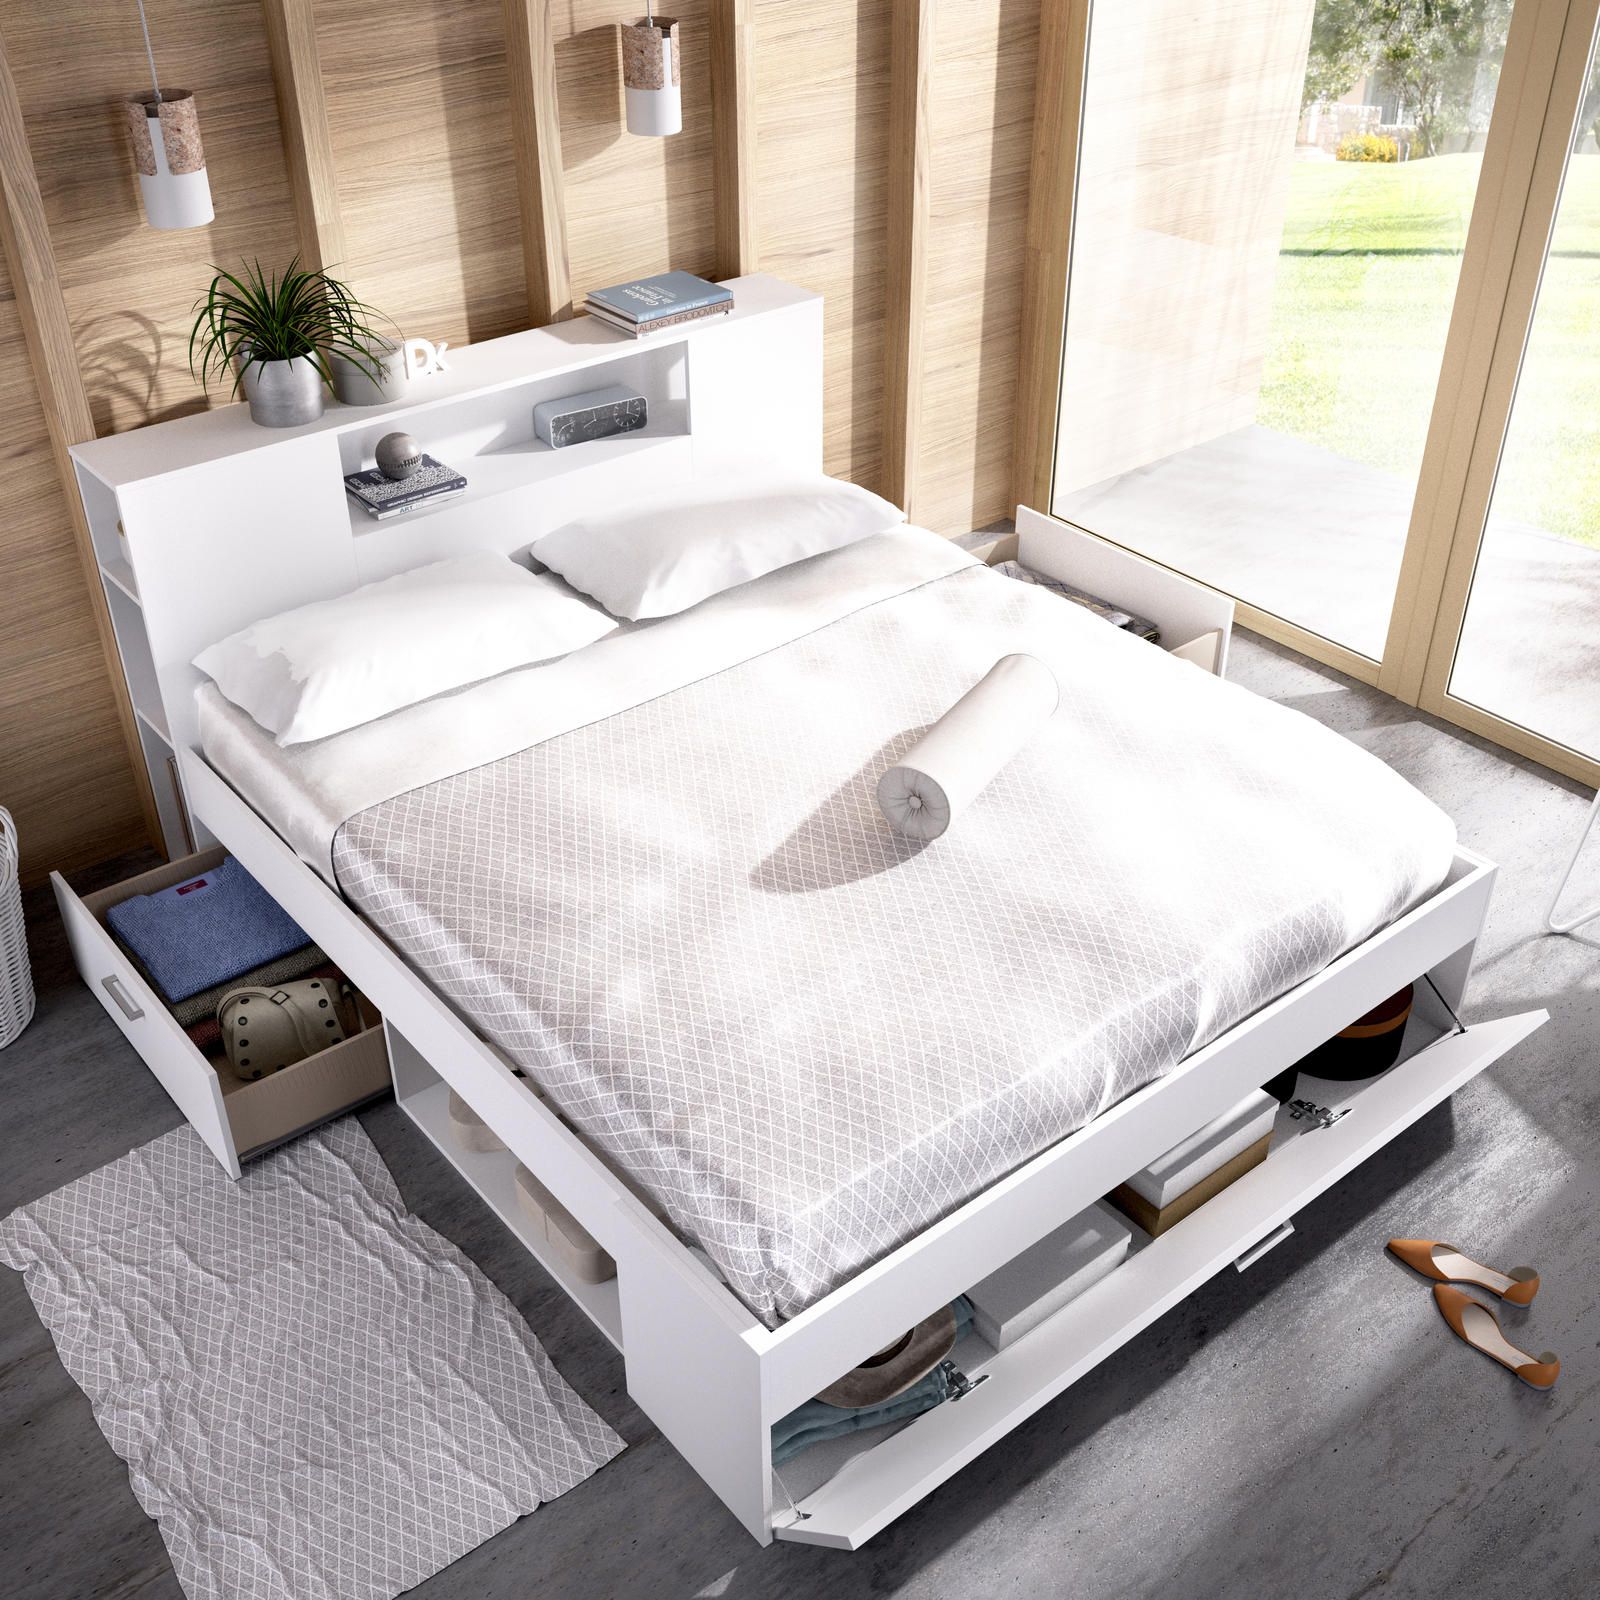 Aldo Manželská postel s řadou úložných prostorů, nadstavcem Lanka white - Nábytek ALDO